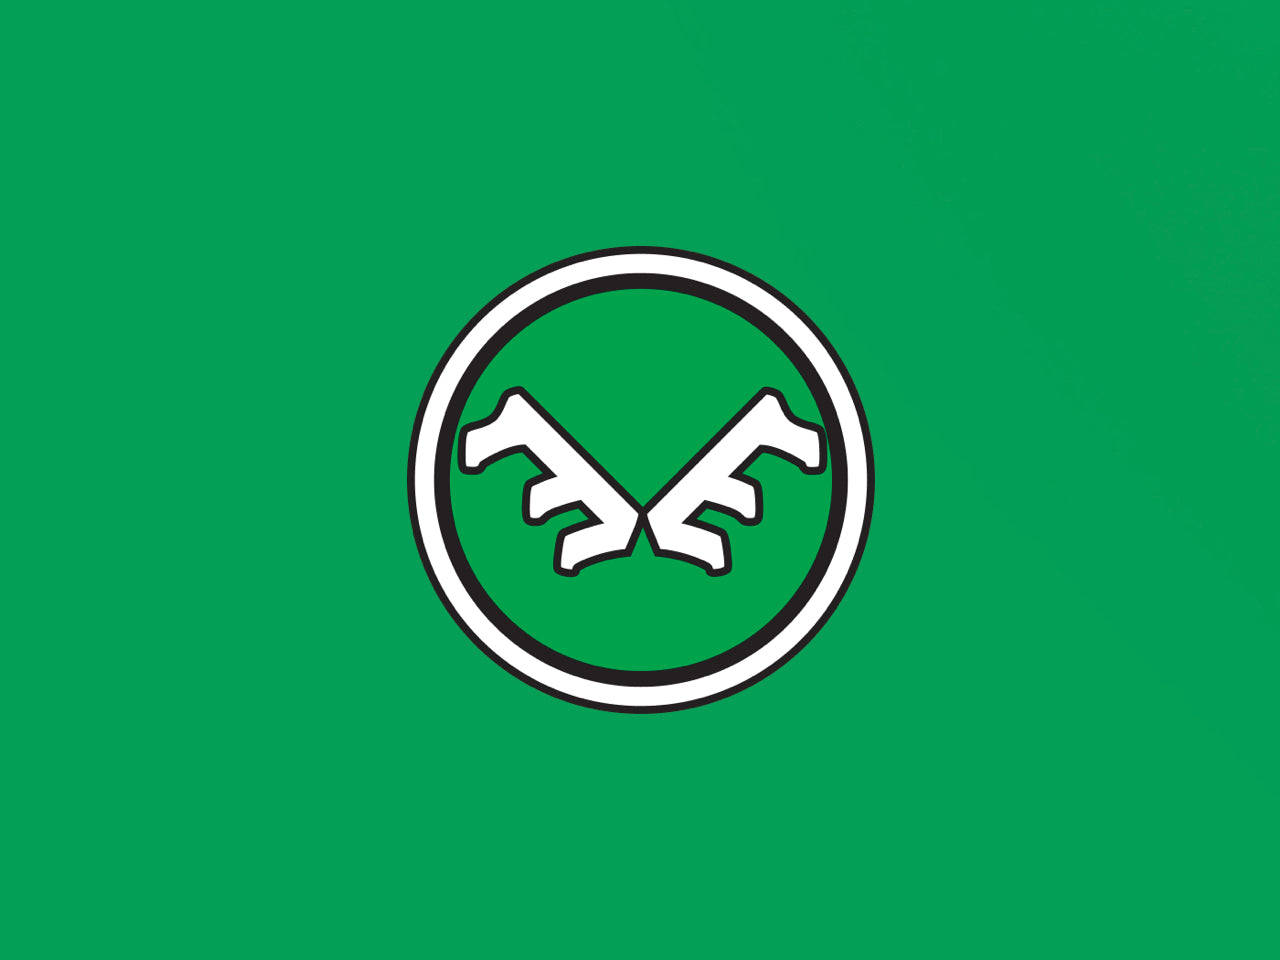 Colorado State University Antlers Logo Wallpaper